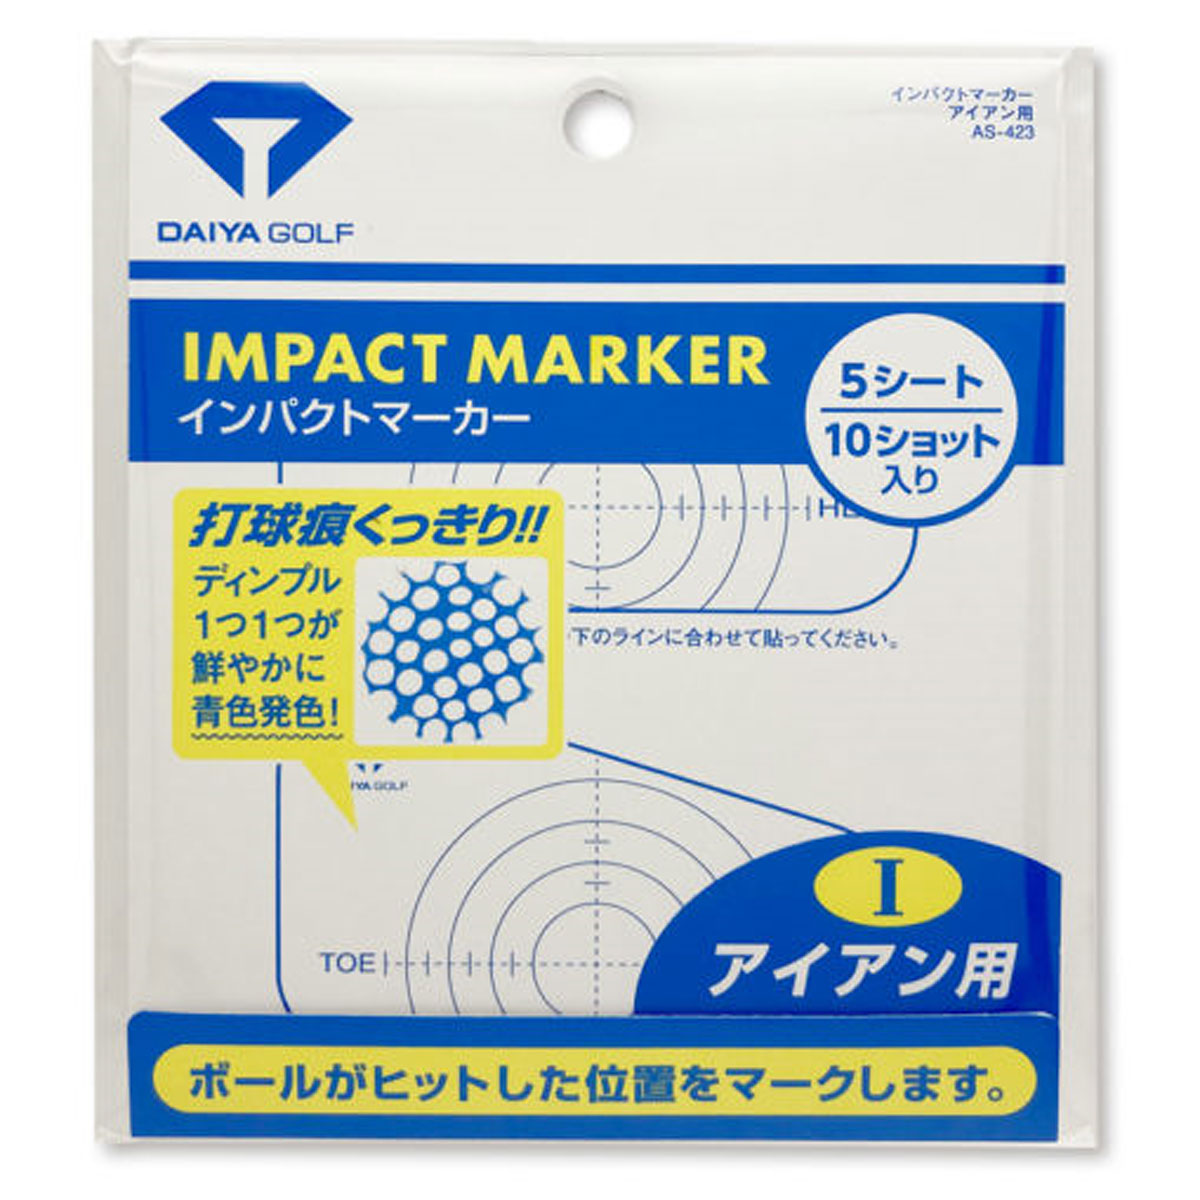 日本にDAIYA GOLF ダイヤゴルフ日本正規品 IMPACT MARKER(インパクトマーカー) アイアン用 「AS-423」 「ゴルフスイング練習用品」 